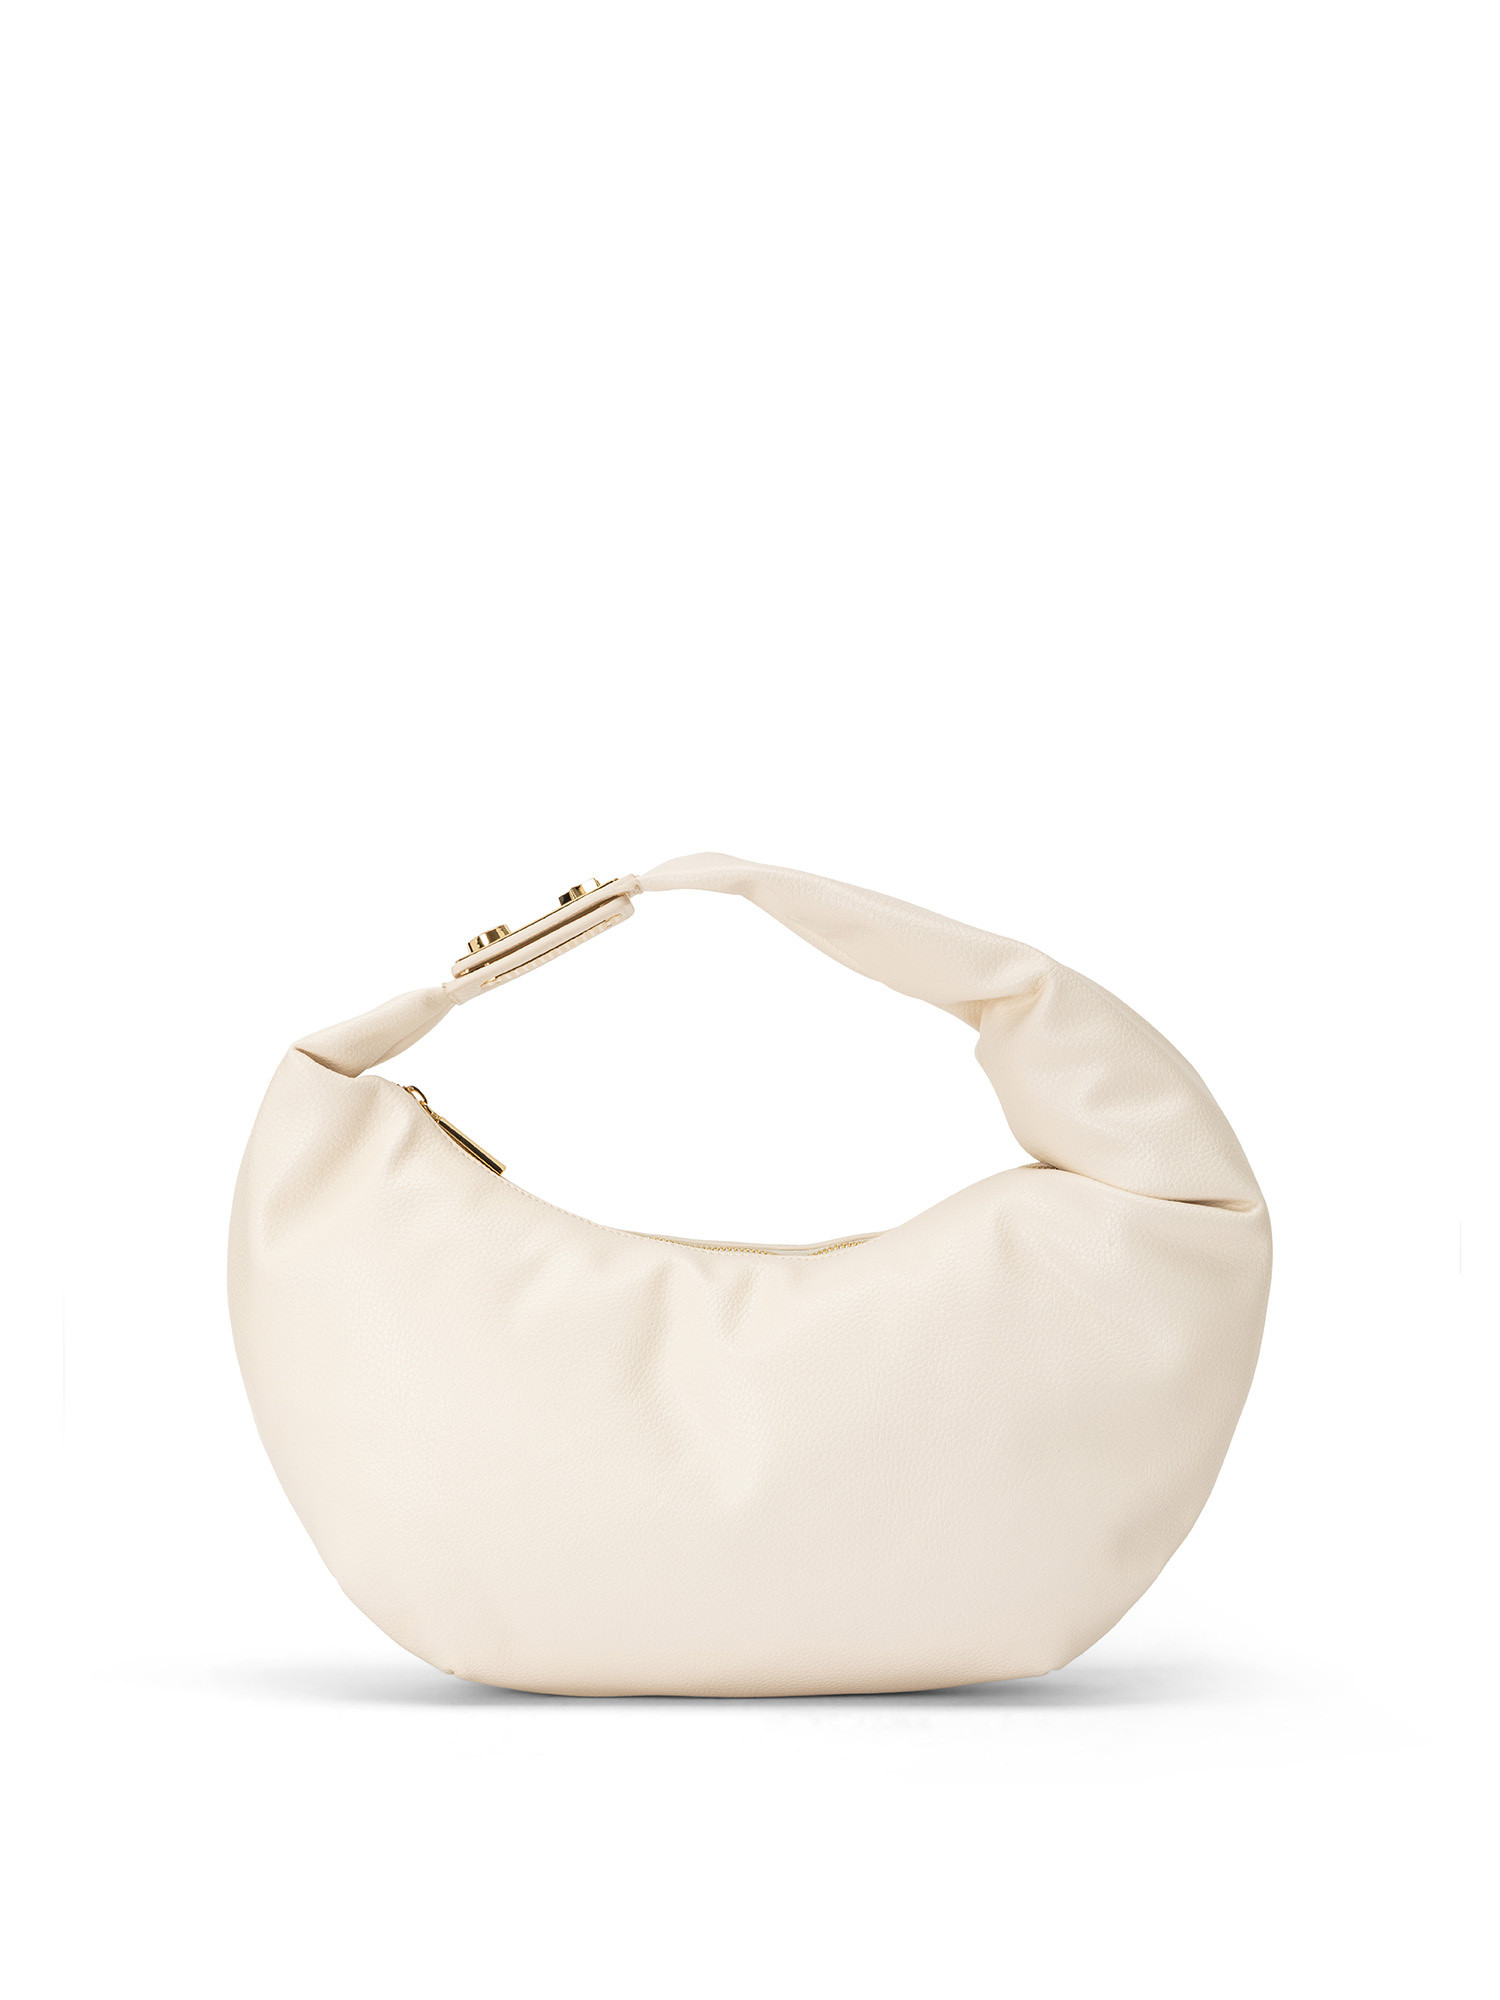 Soft shoulder bag with shoulder strap, White, large image number 0